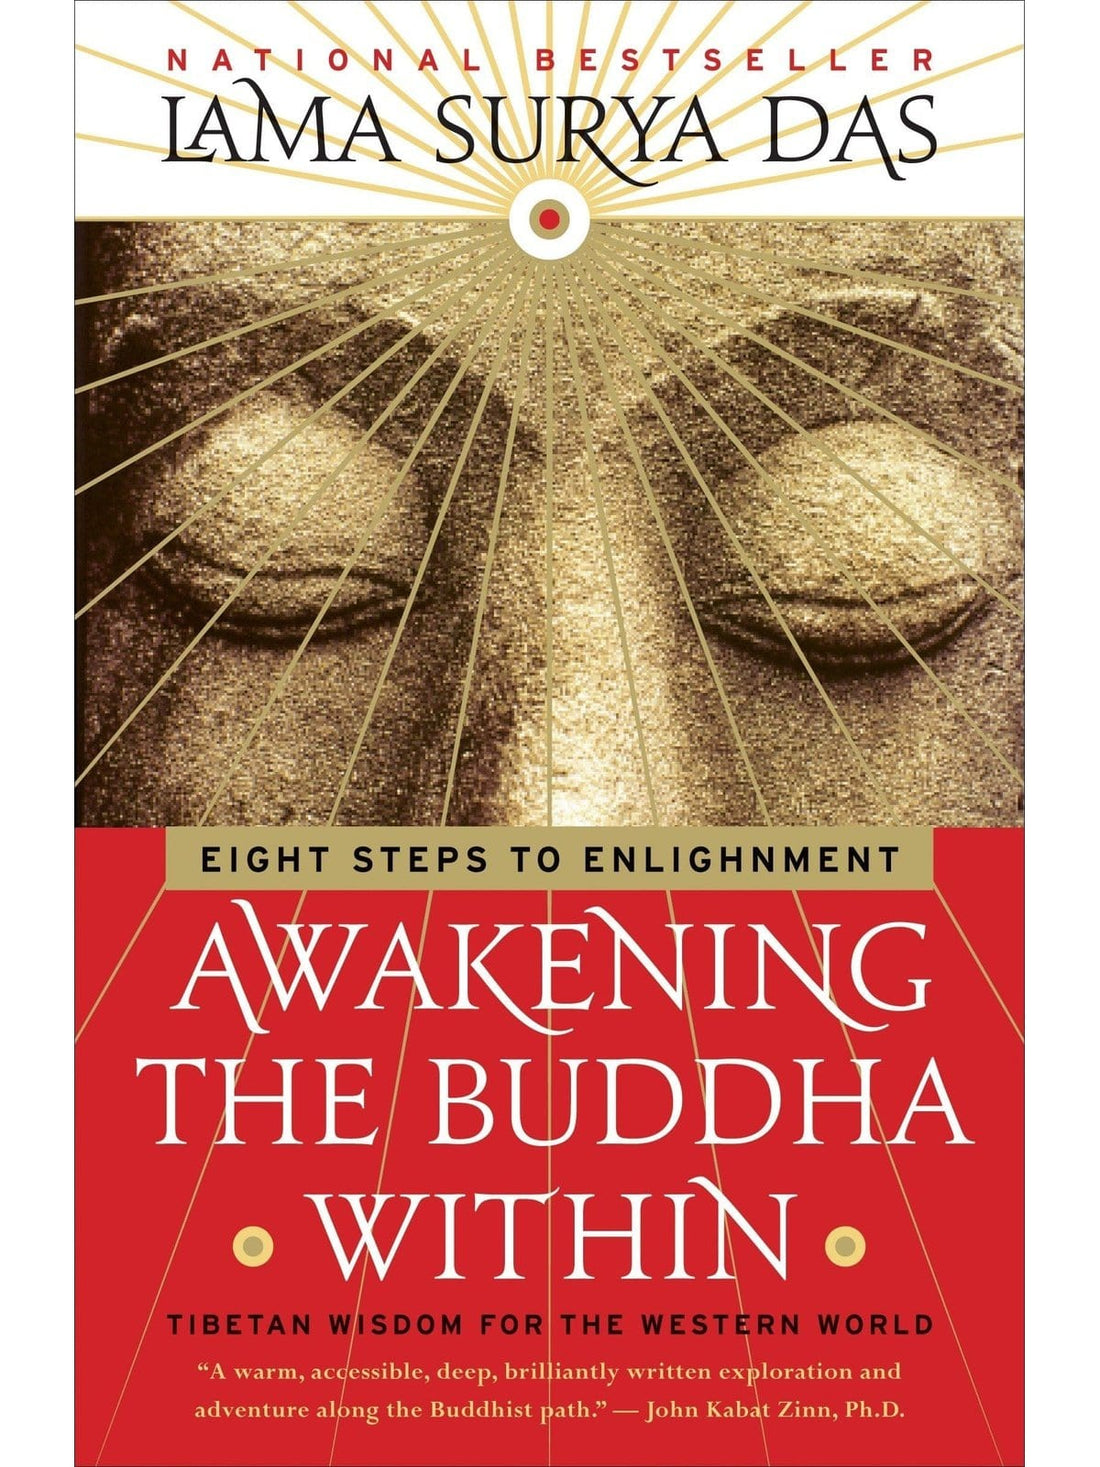 Awakening the Buddha Within - Lama Surya Das | bk2010-53 | Shamans Market